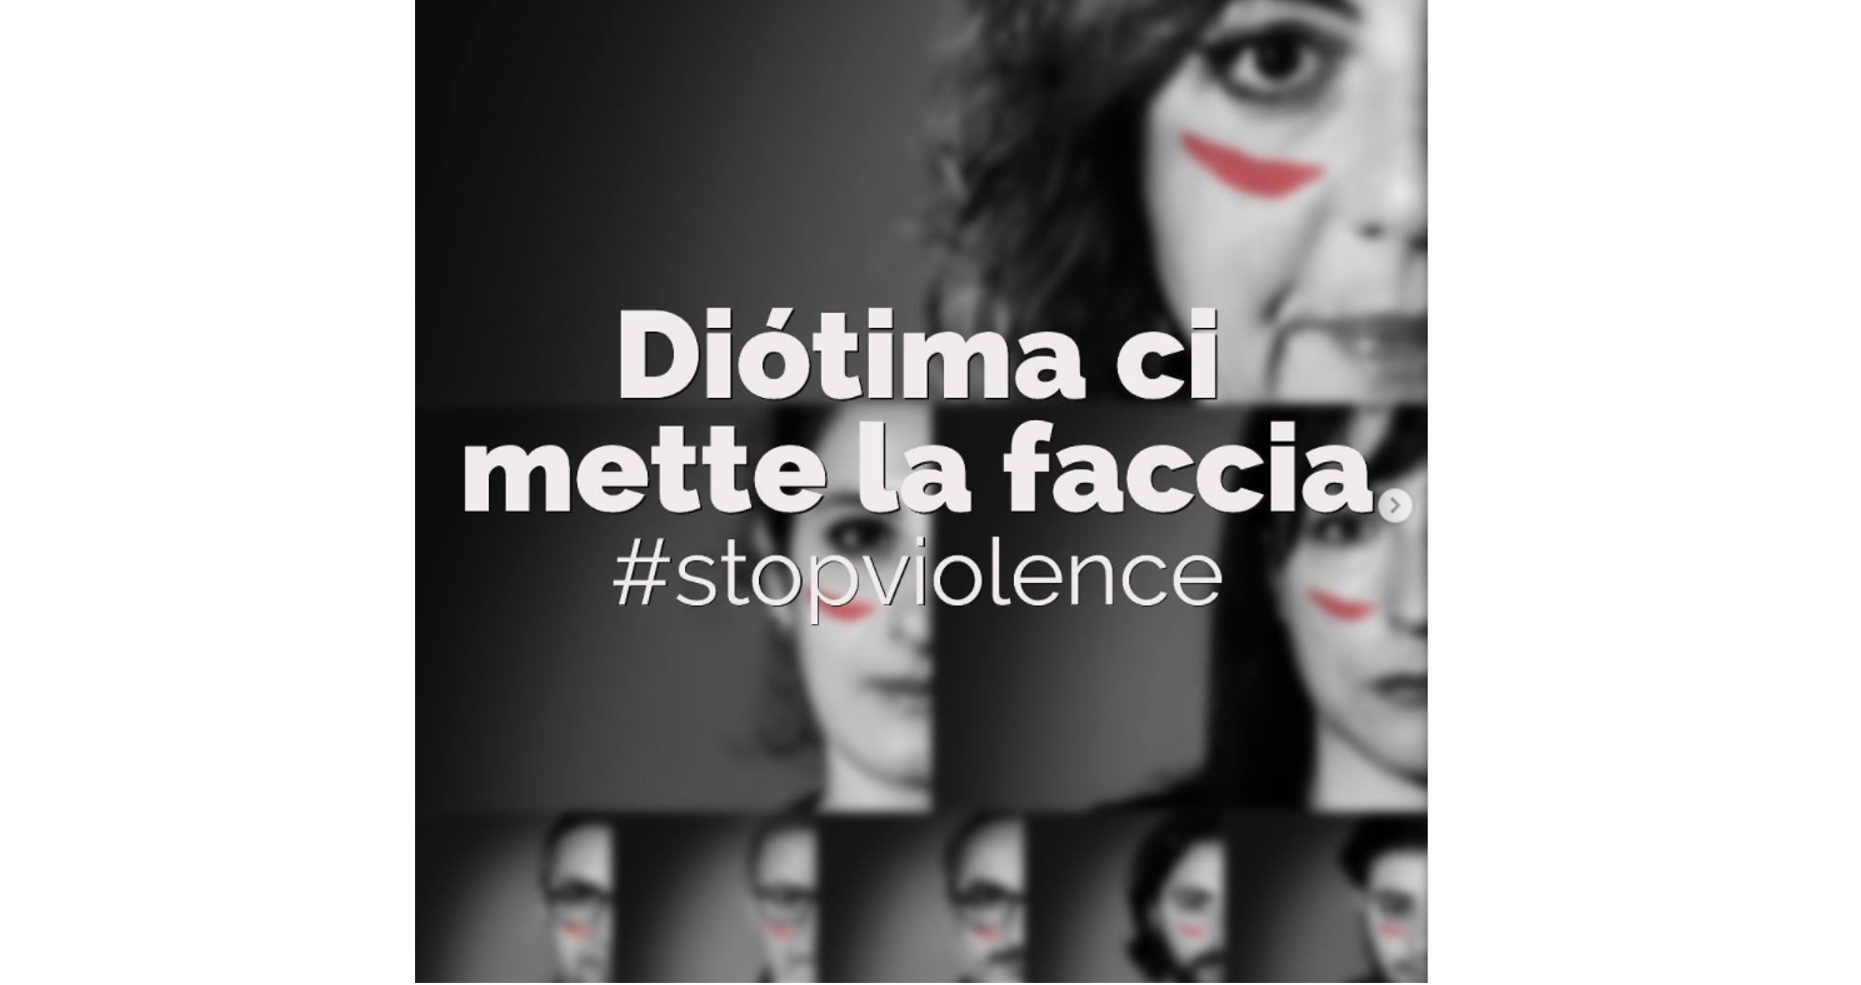 “#stopviolence. Diotima ci mette la faccia”. Quando è il messaggio che conta: la campagna dell’agenzia di comunicazione materana per il 25 novembre